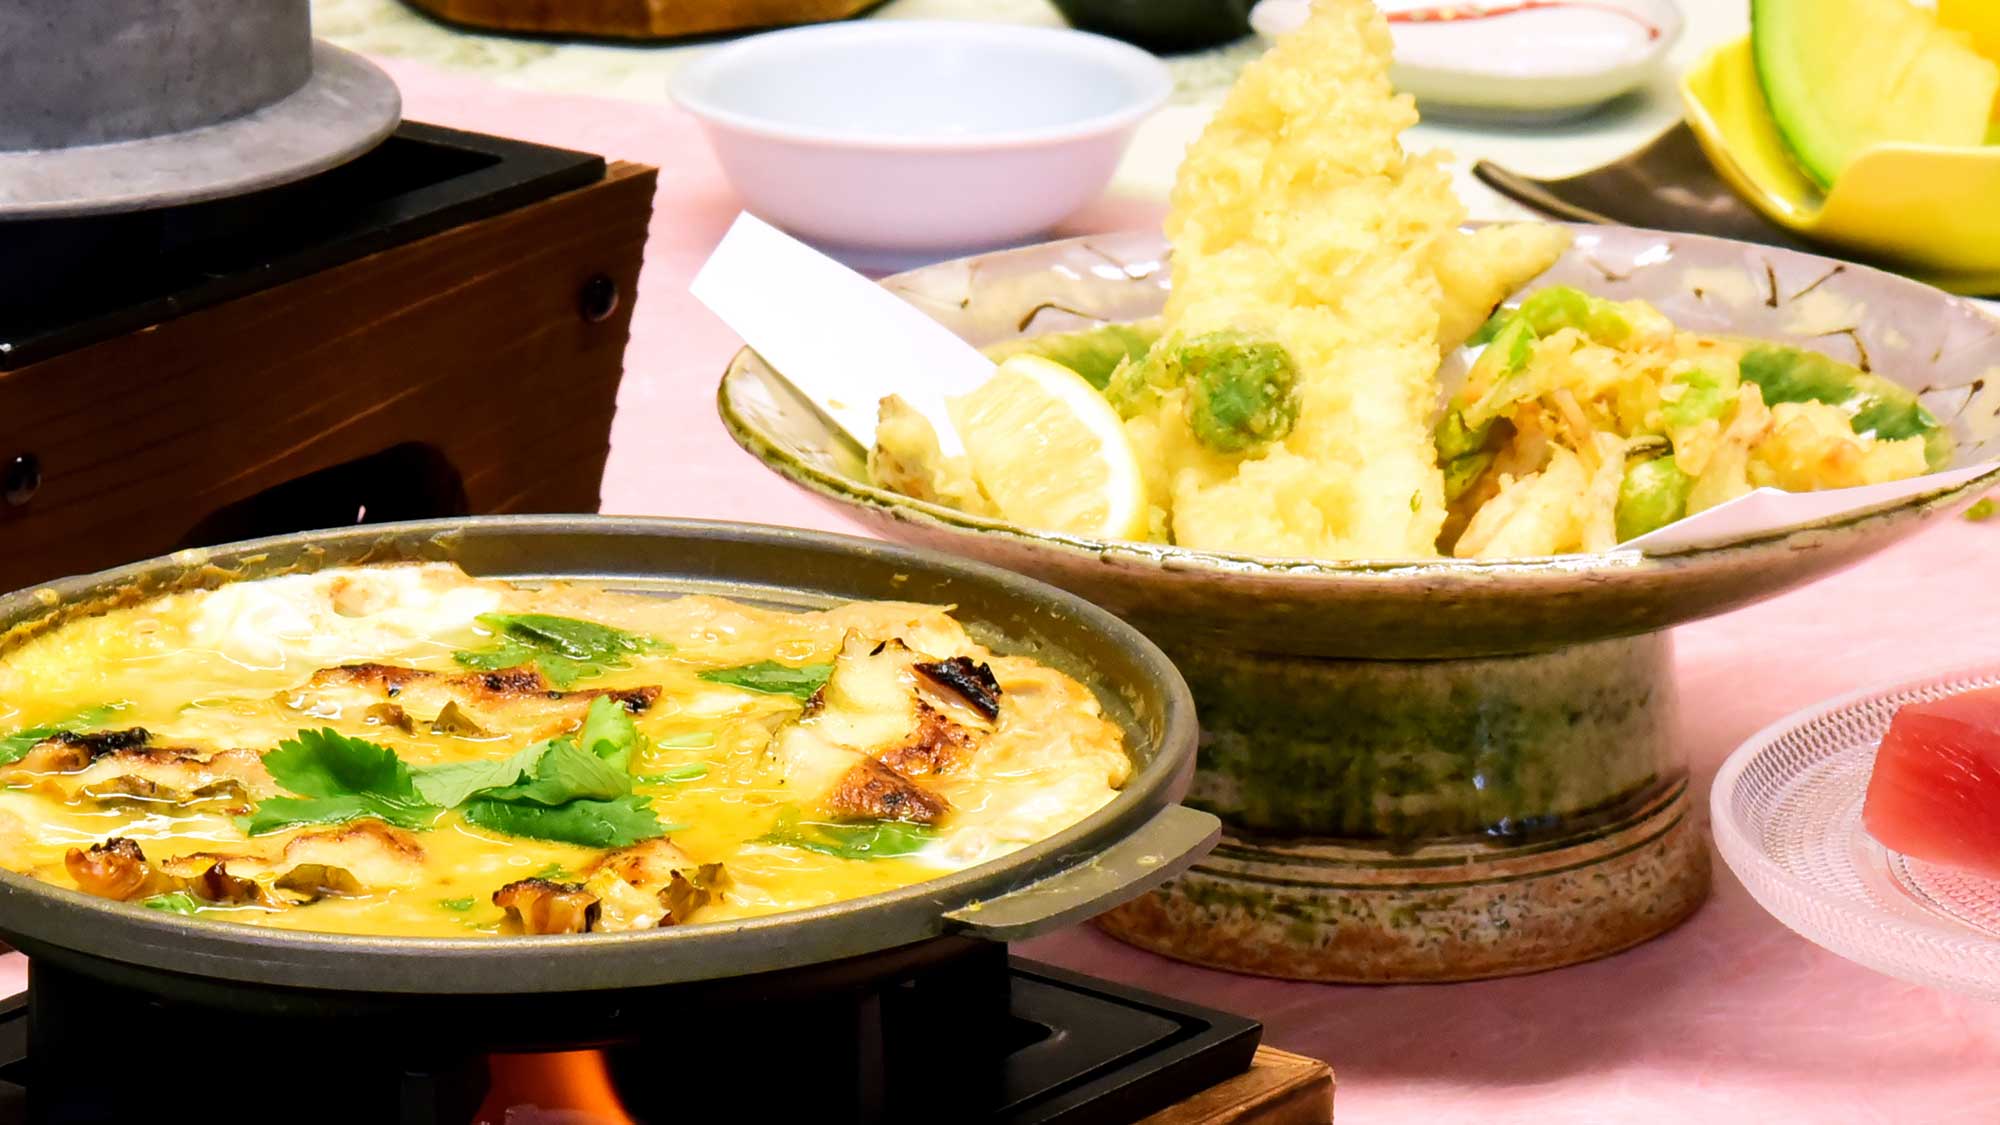 豪快な穴子の一本揚げにふんわり柔らか、肉厚の穴子をシャキシャキしたゴボウの食感がよく合う柳川鍋。